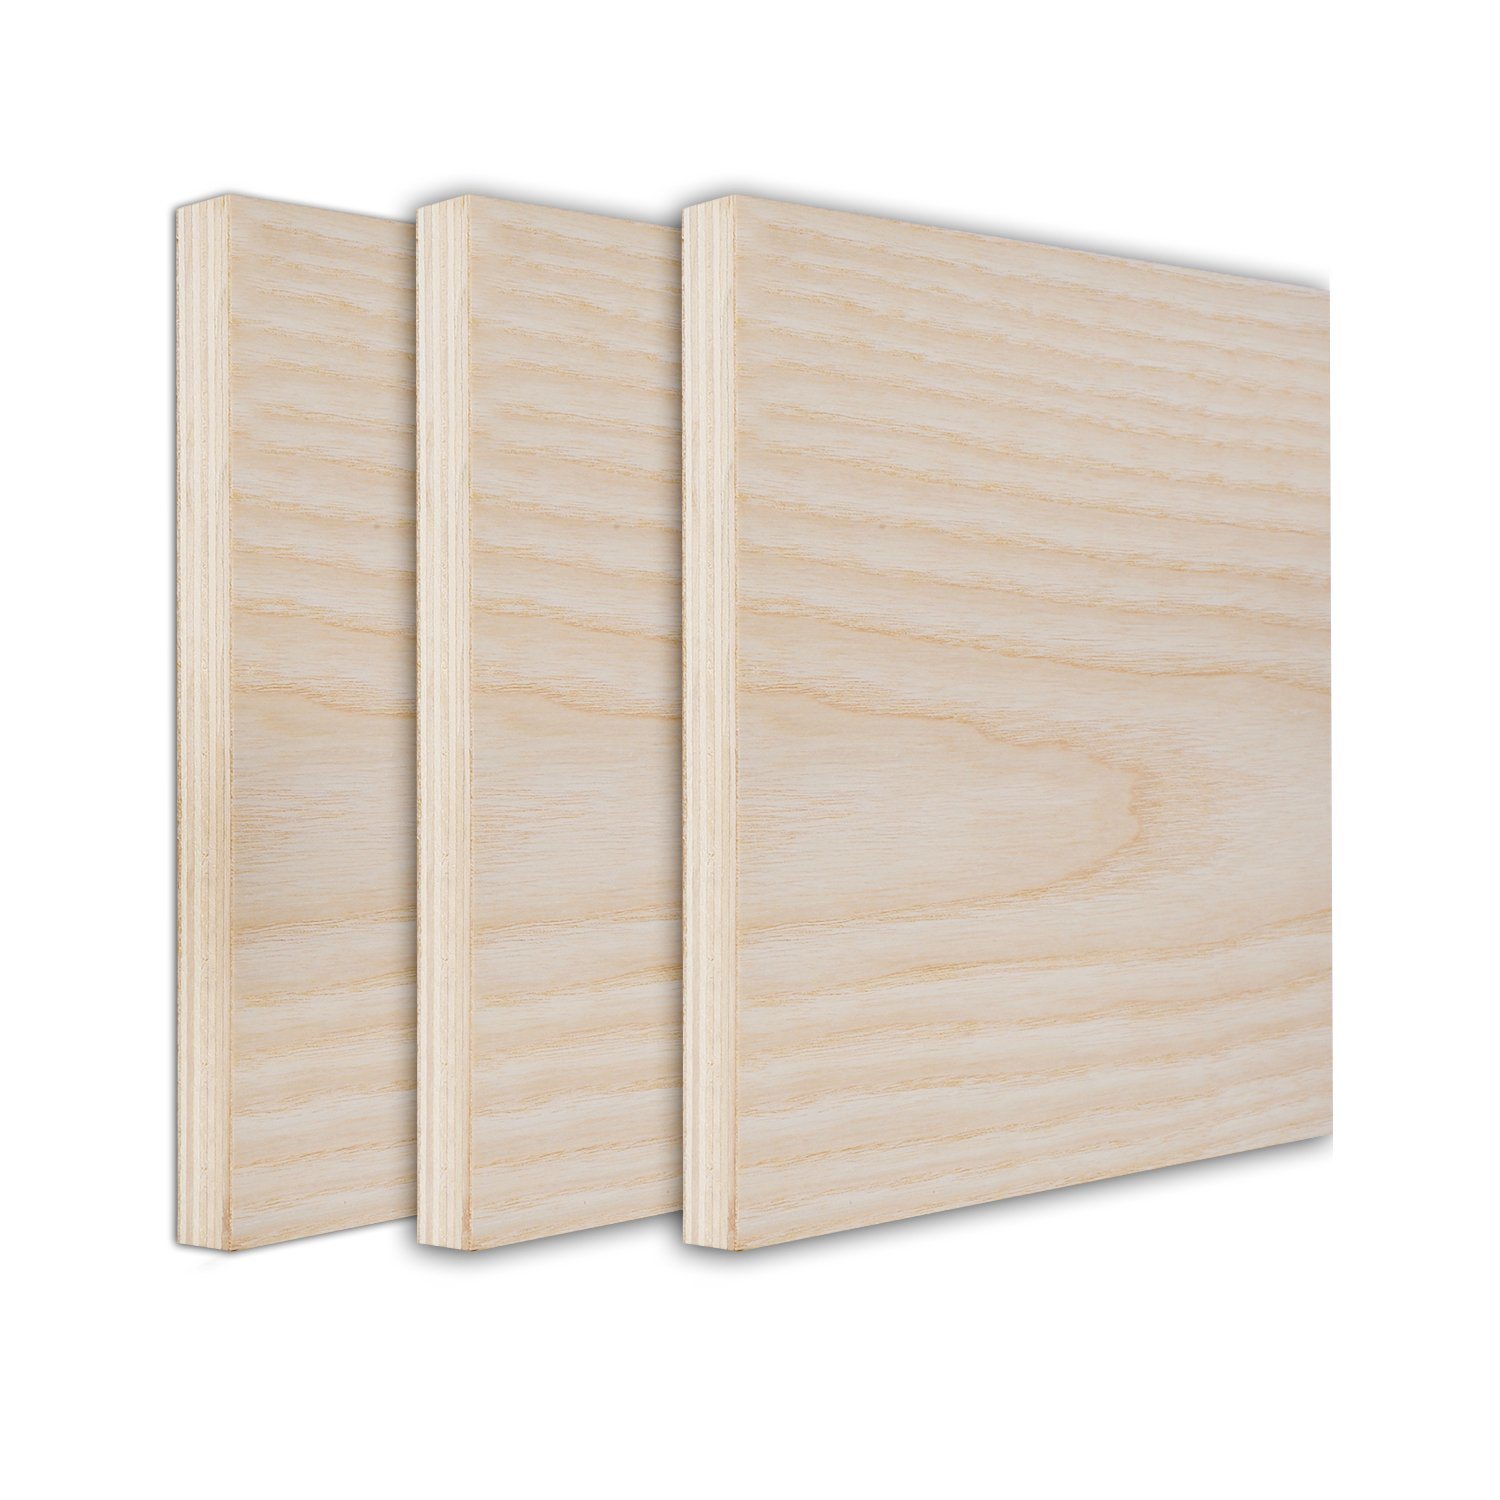 High Quality Oak Plywood Multi Woodgrain Fancy Plywood for Furniture